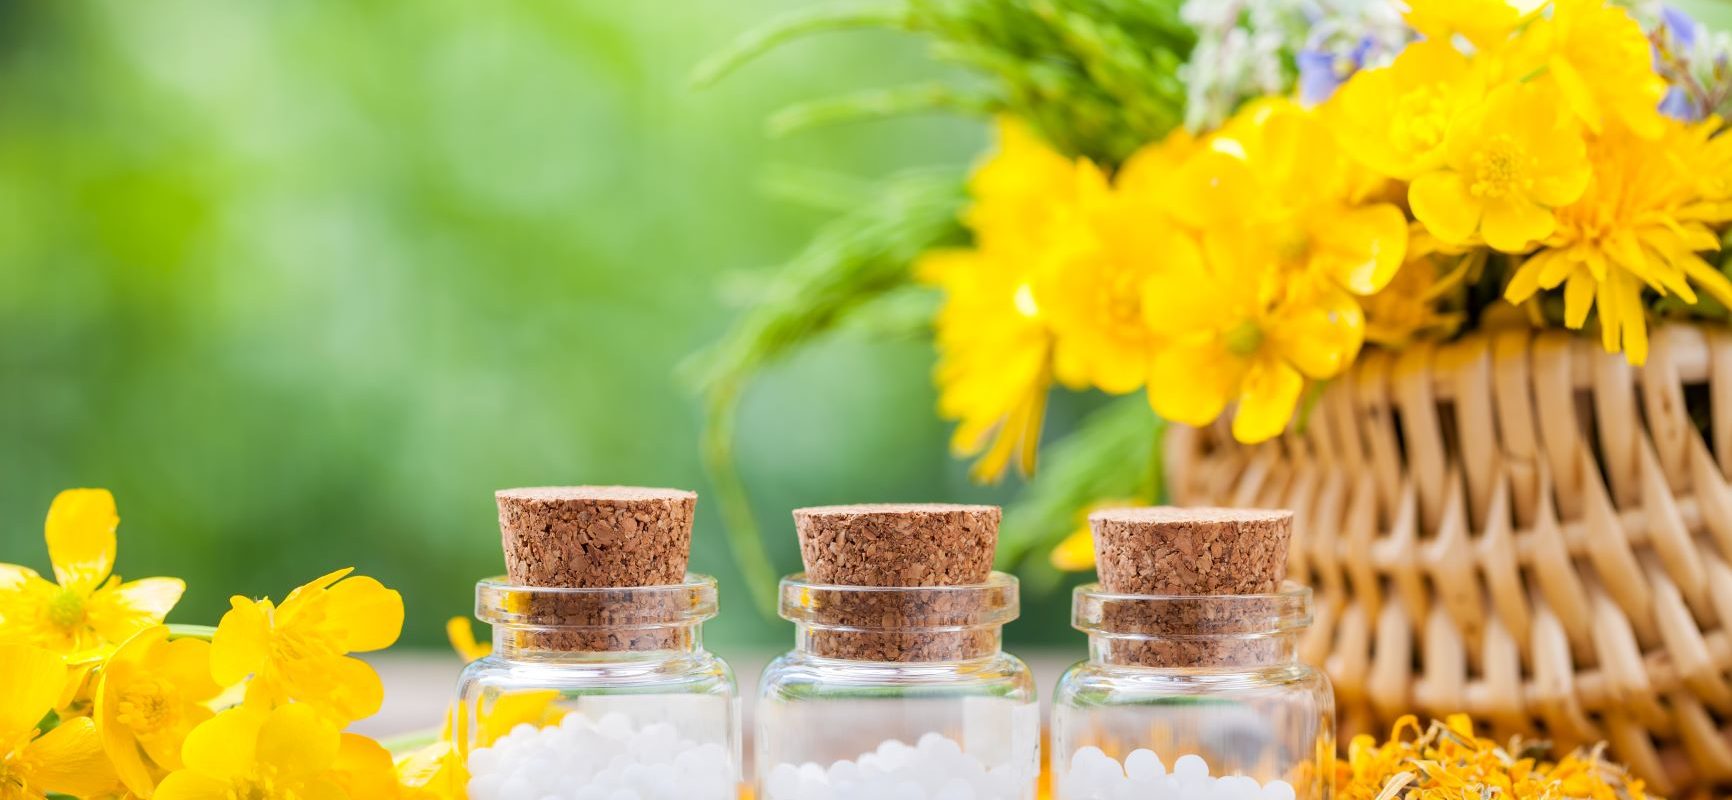 Naturalny sposób na brodawki. Jakie zioła i rośliny lecznicze pomagają na brodawki? Jakie leki homeopatyczne na brodawki stosować? Granulki homeopatyczne w trzech fiolkach stoją na stole w ogrodzie obok kosza wiklinowego z żółtymi kwiatami.